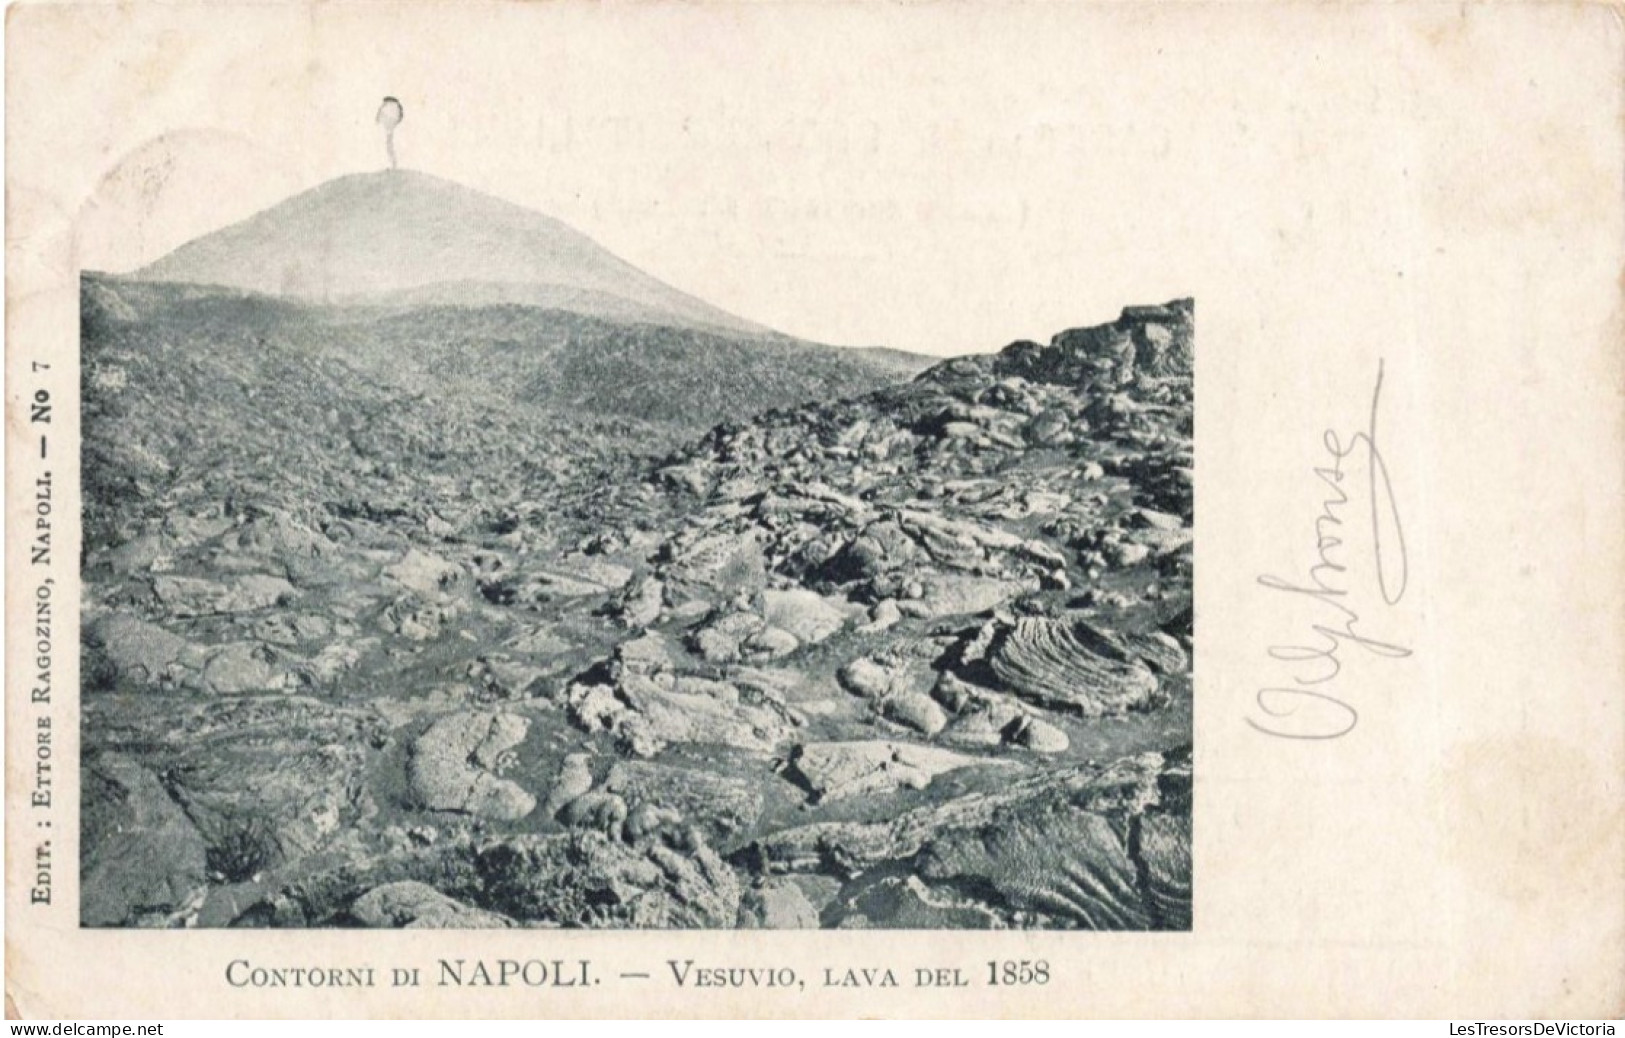 ITALIE - Napoli - Contorni Du Napoli - Vesuvio, Lava Del 1858 - Carte Postale Ancienne - Napoli (Neapel)